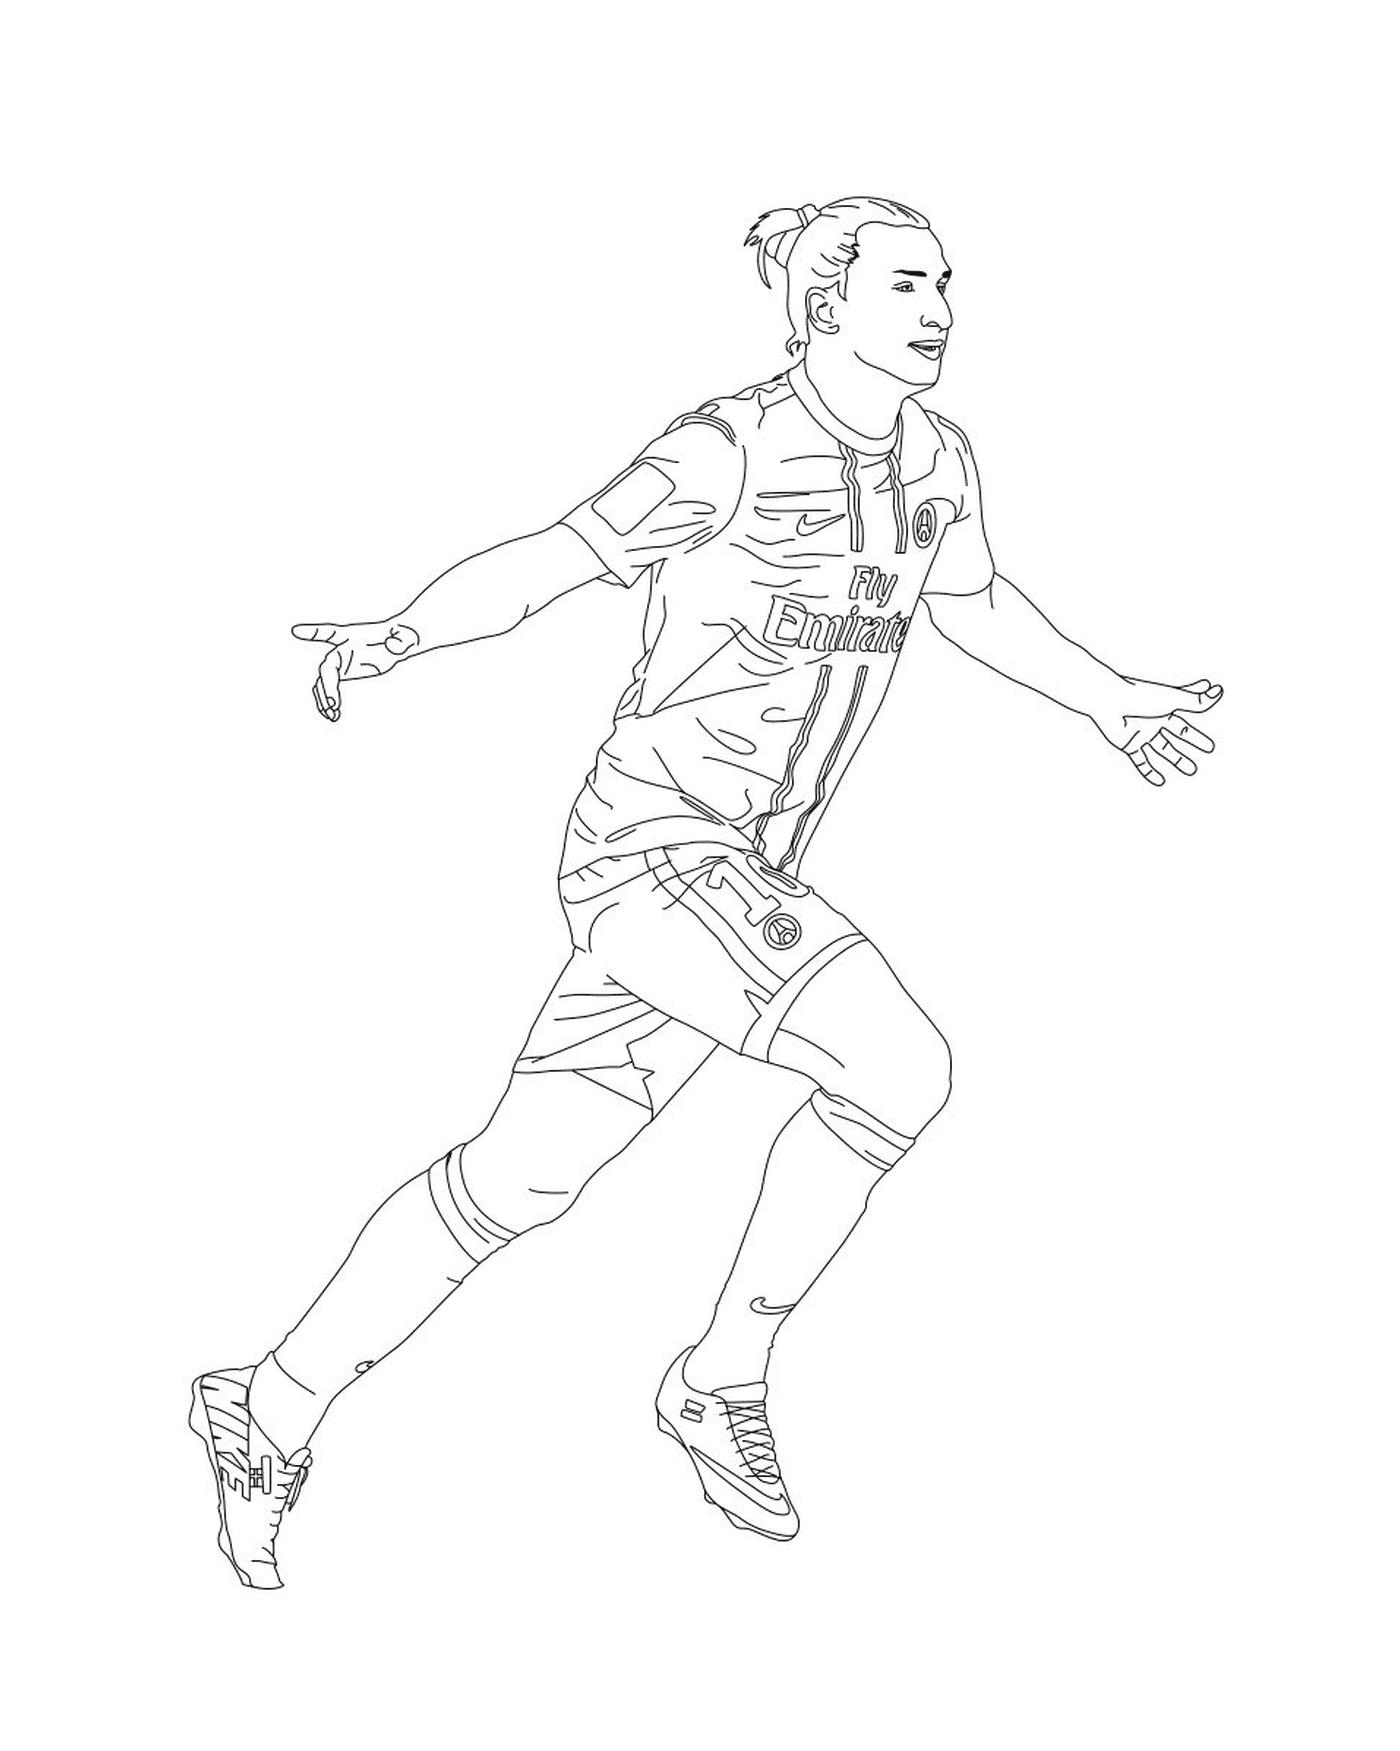  Un jugador de fútbol corriendo con la pelota 